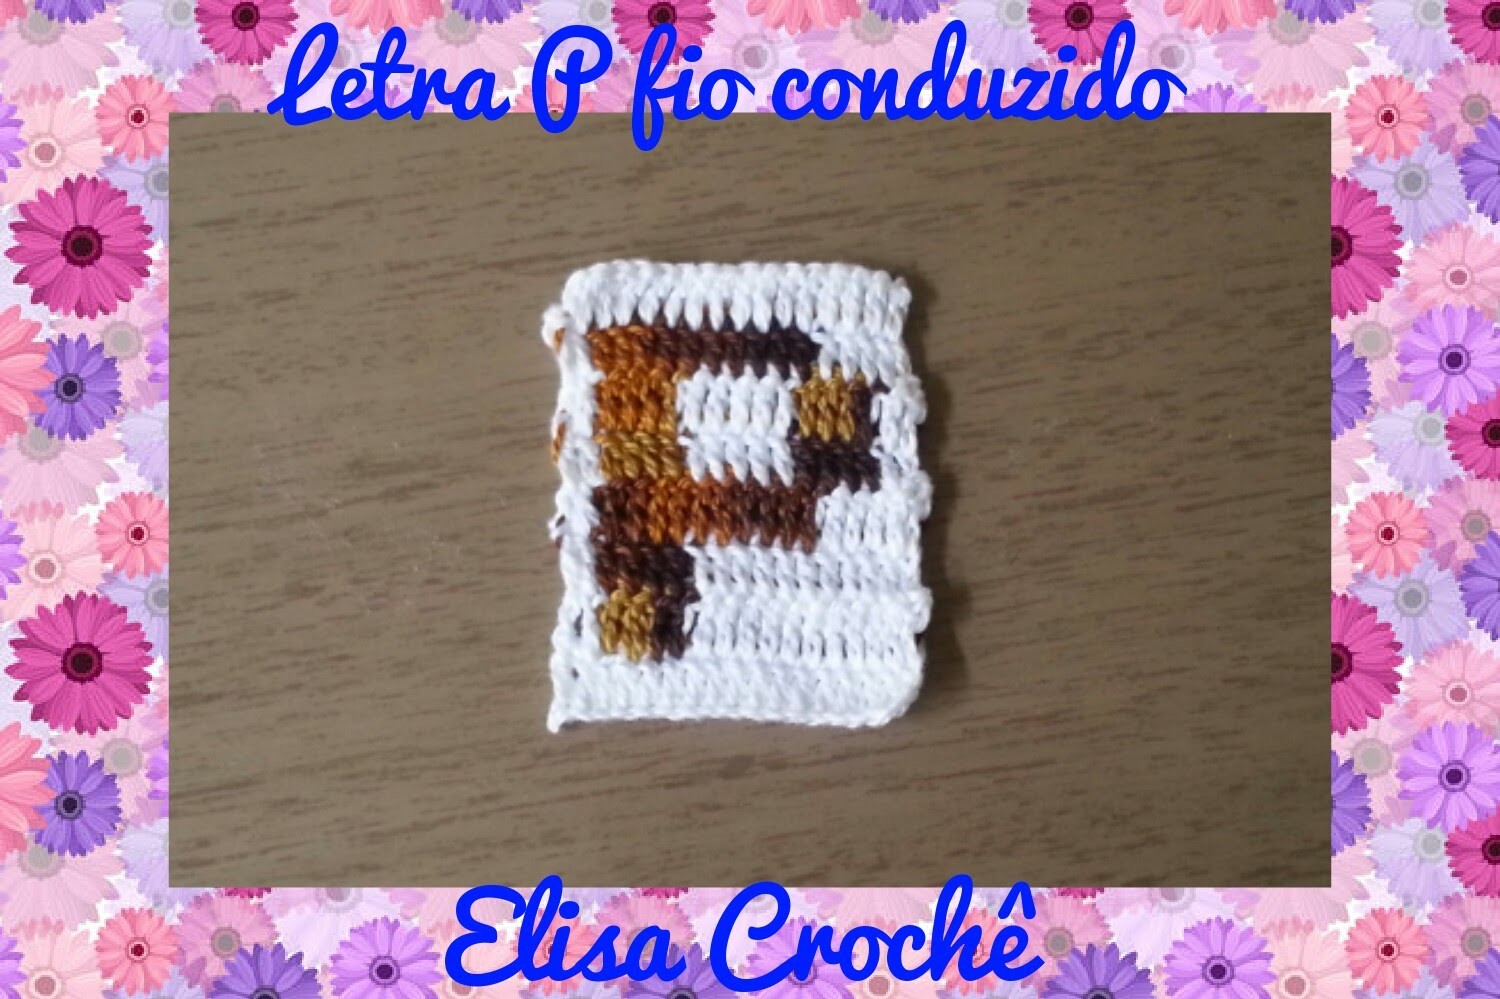 Letra P de crochê em fio conduzido # Elisa Crochê